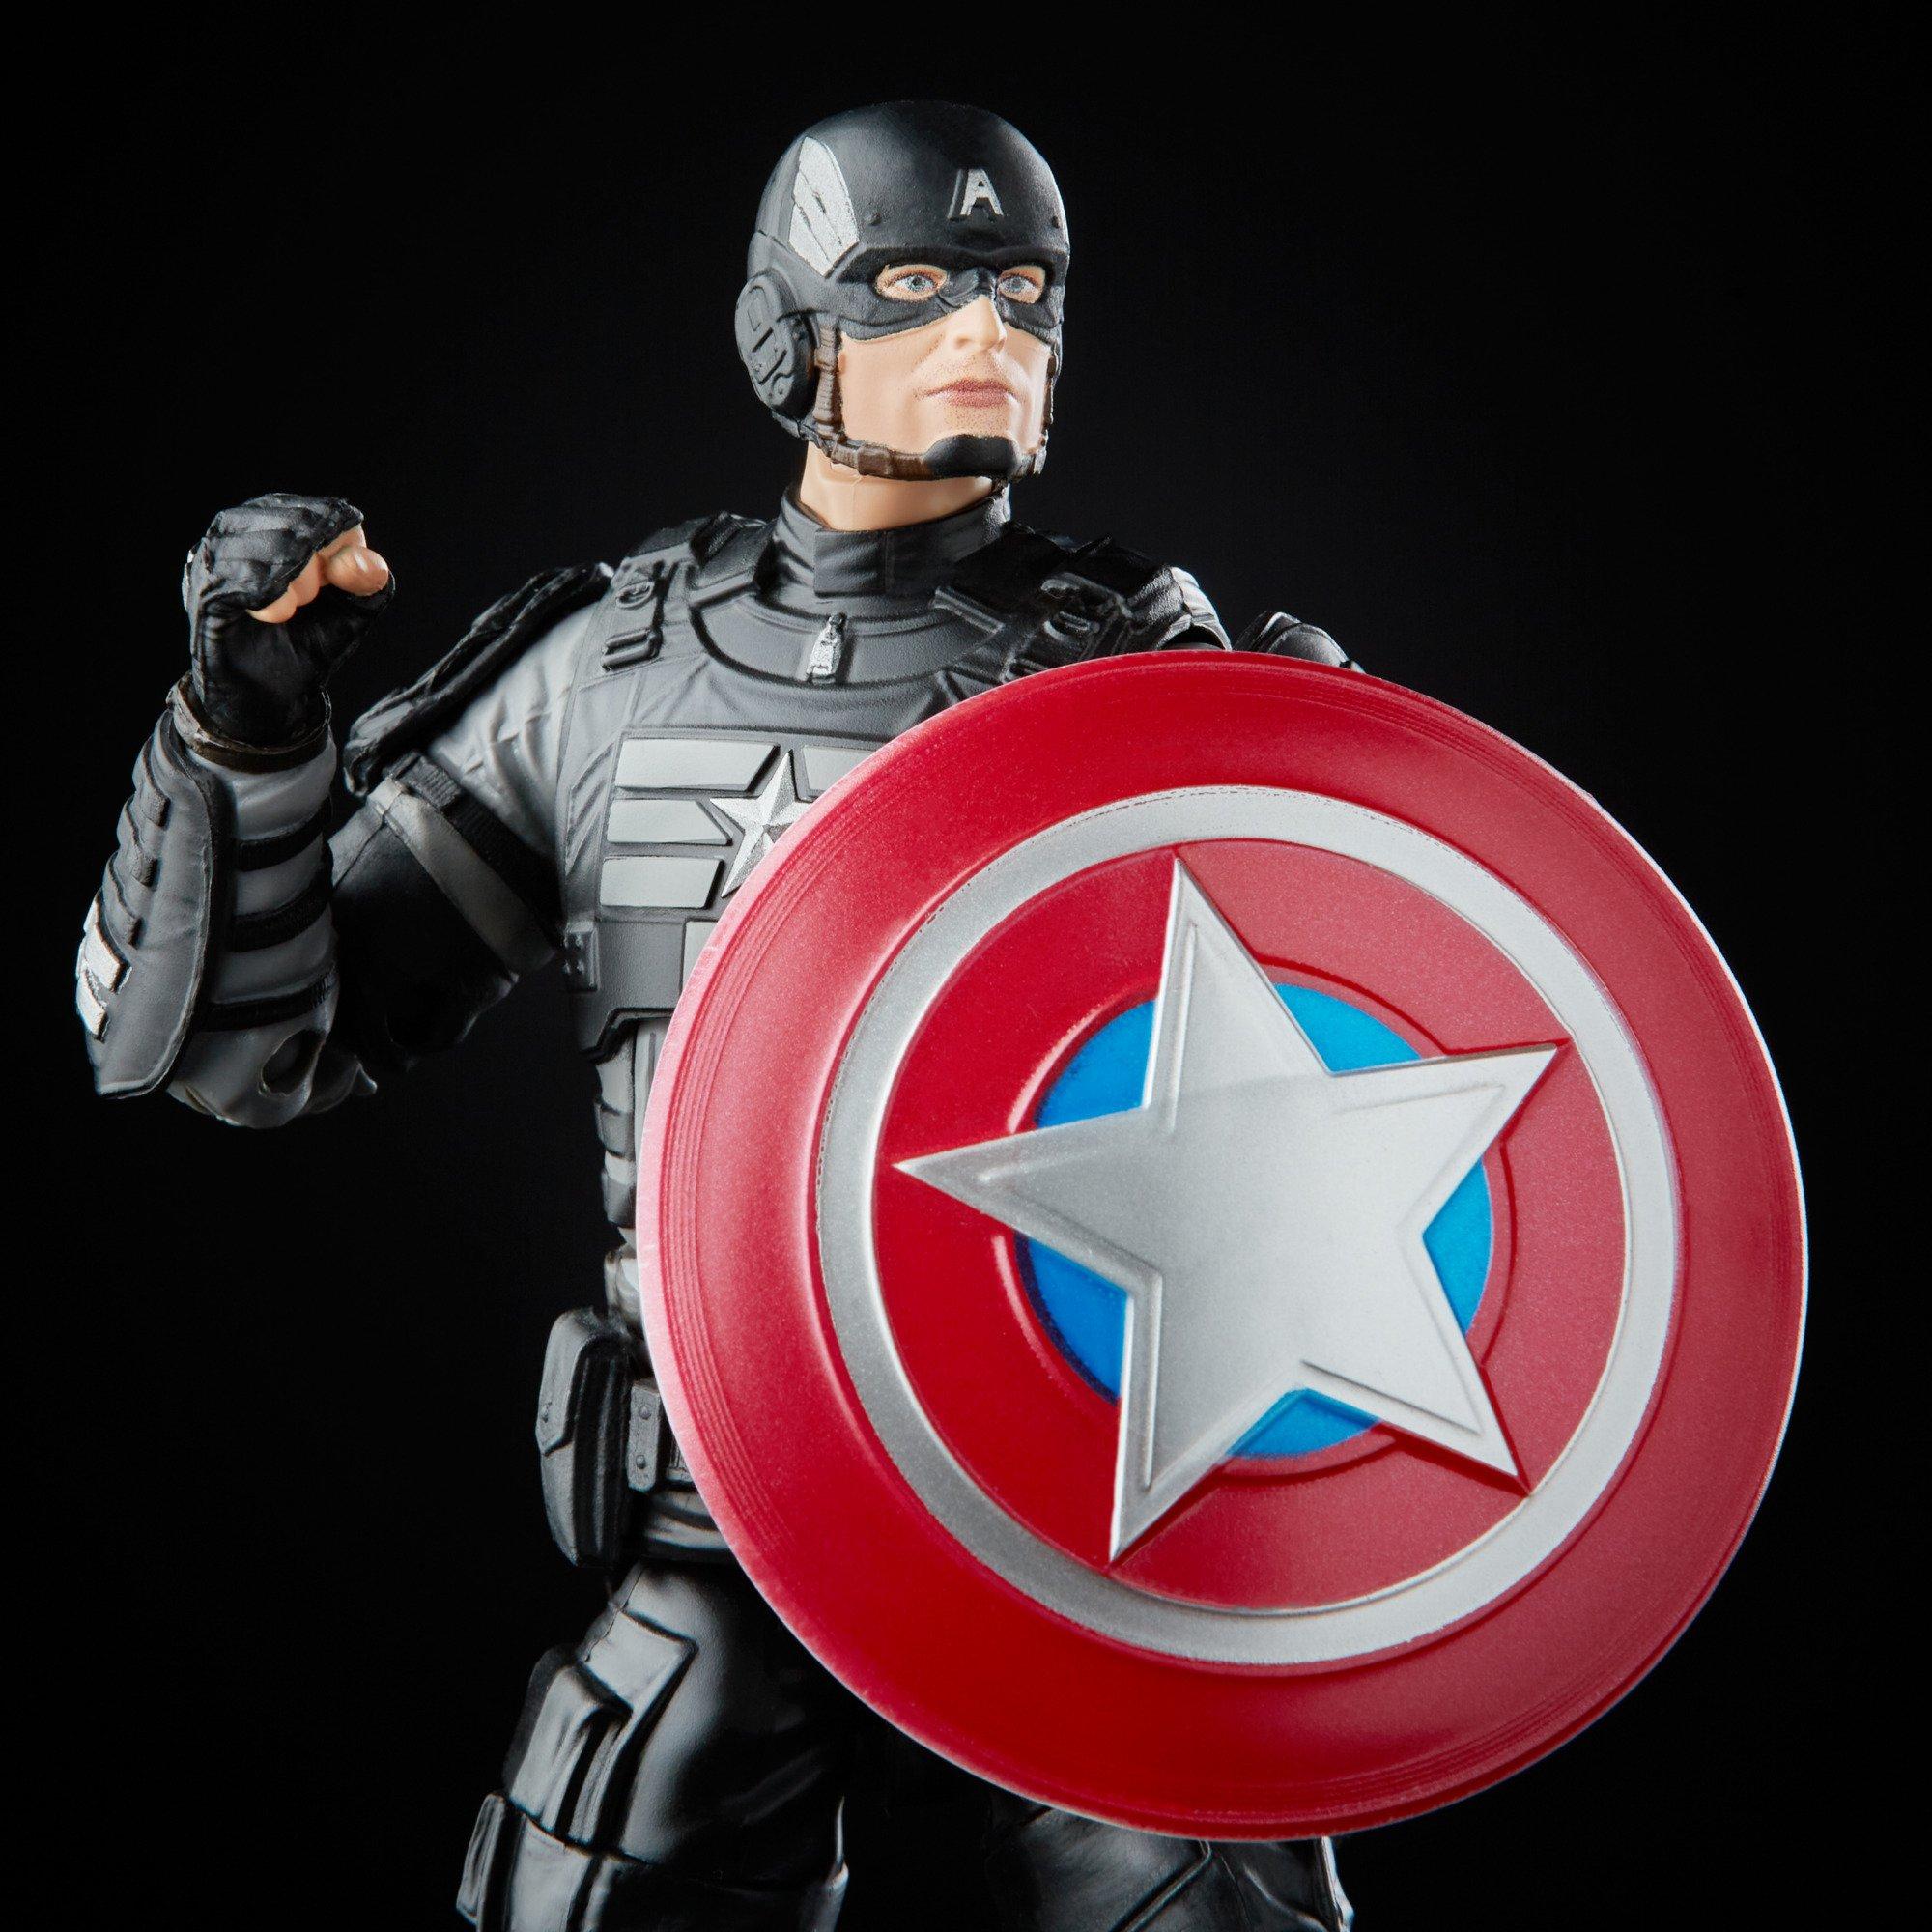 Hasbro Marvel Legends Series Marvel's Avengers Stealth Captain America Gamerverse 6-in Action Figure